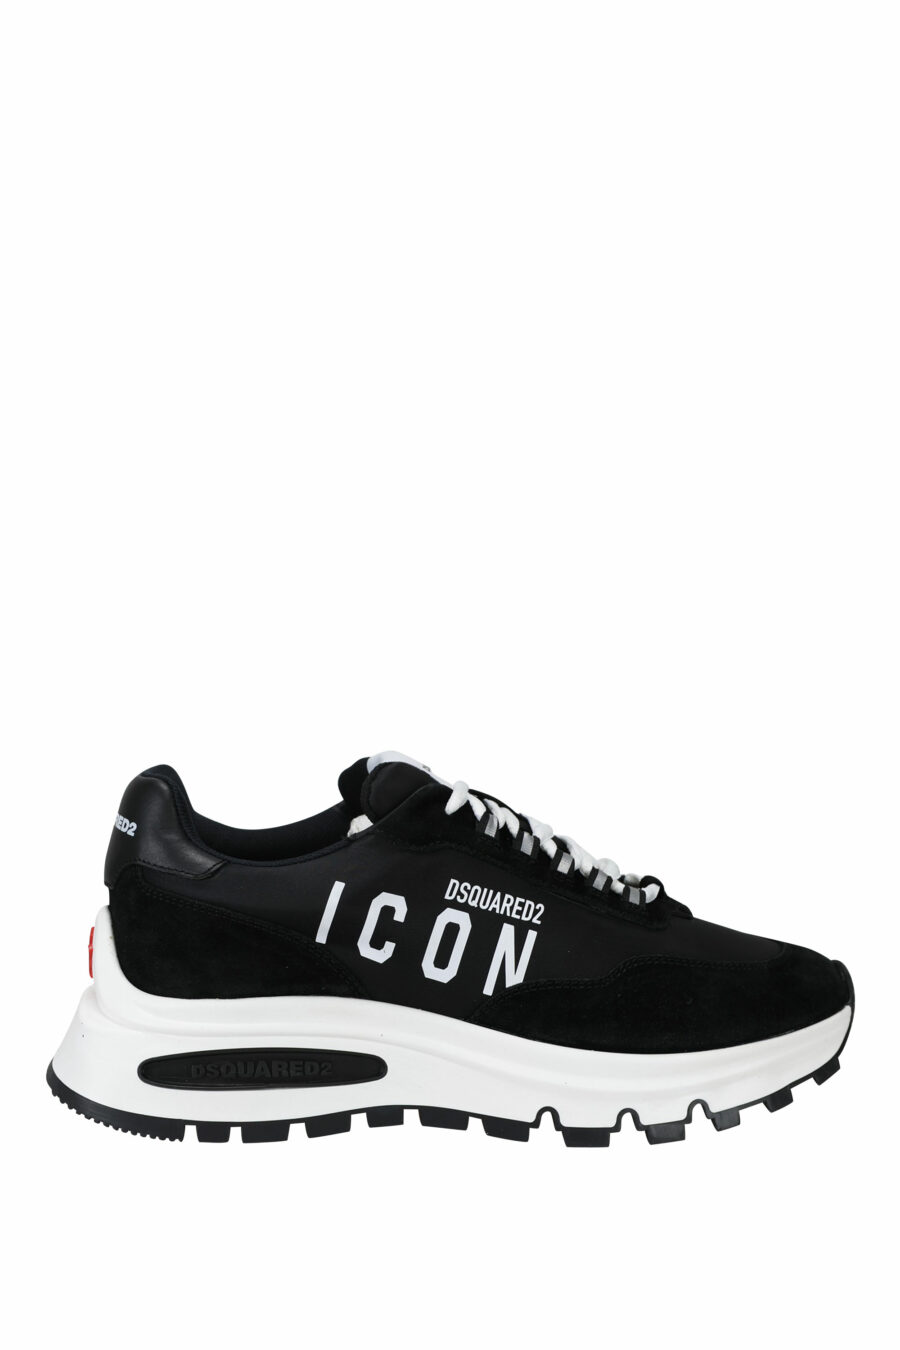 Schwarze Schuhe mit Minilogo "Icon" und weißer Sohle mit Innenschlauch - 8055777249321